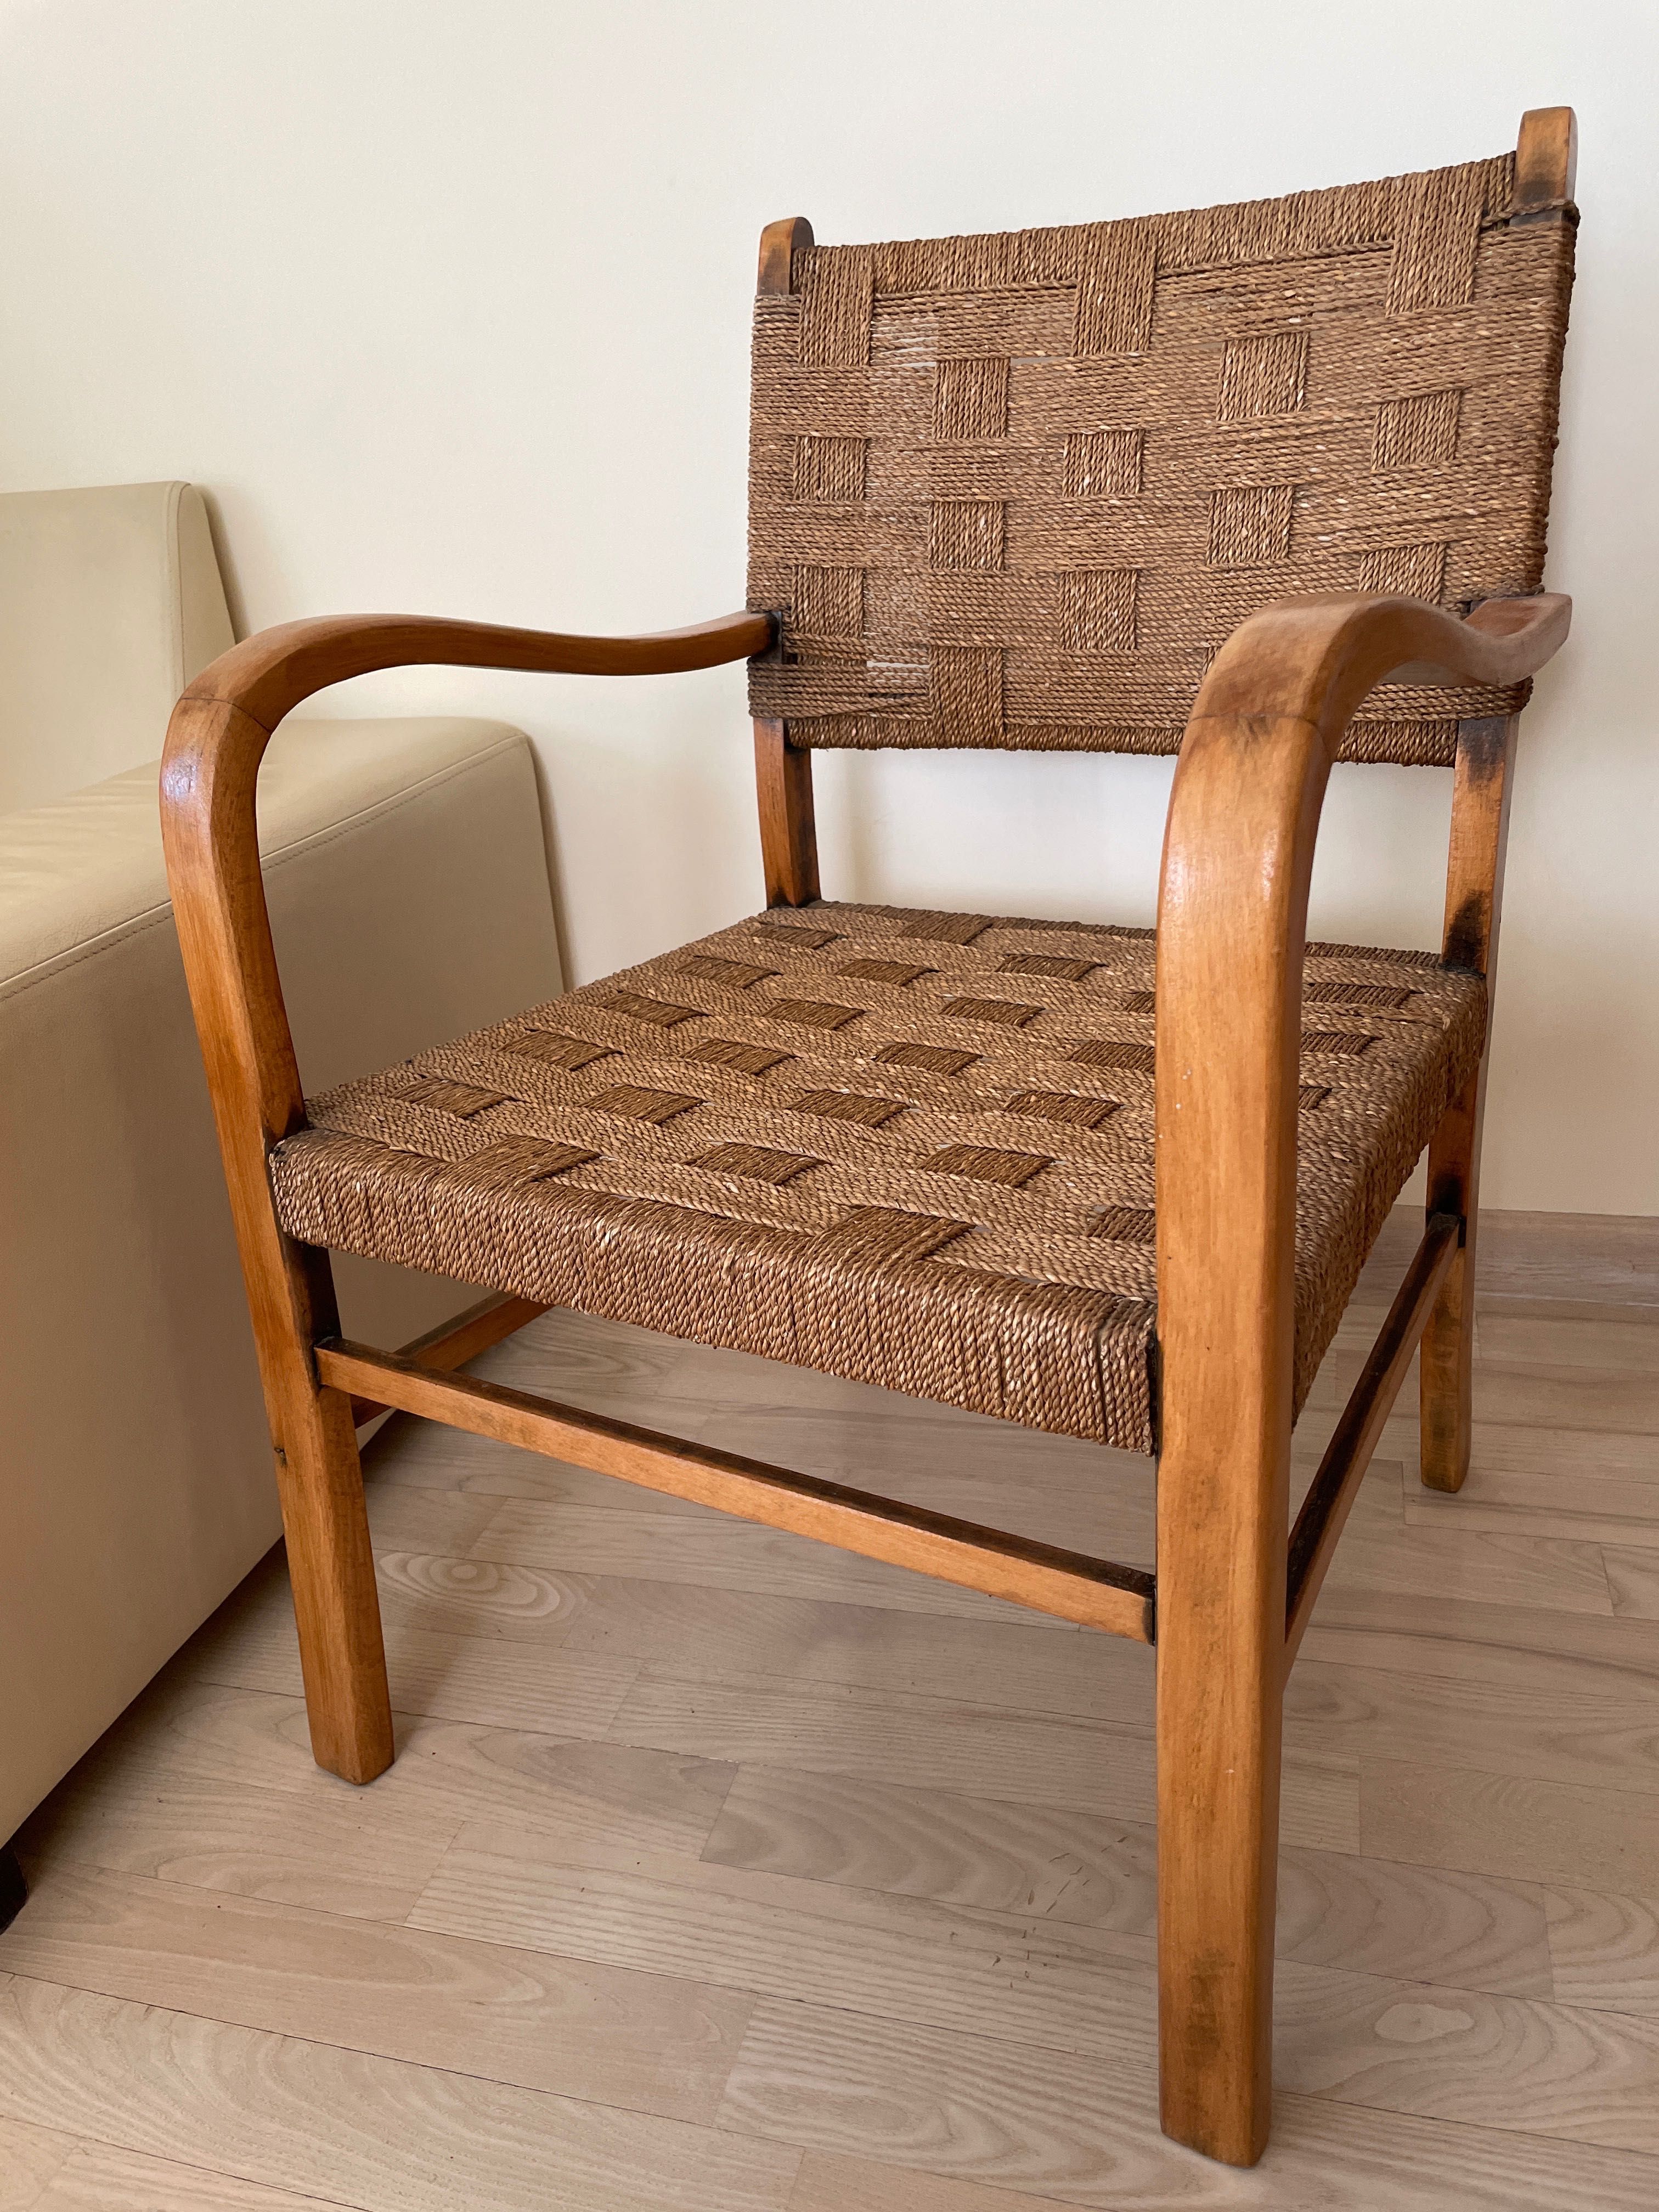 Fotel pleciony drewniany sznurkowy lata 60/70 vintage ogród siedlisko